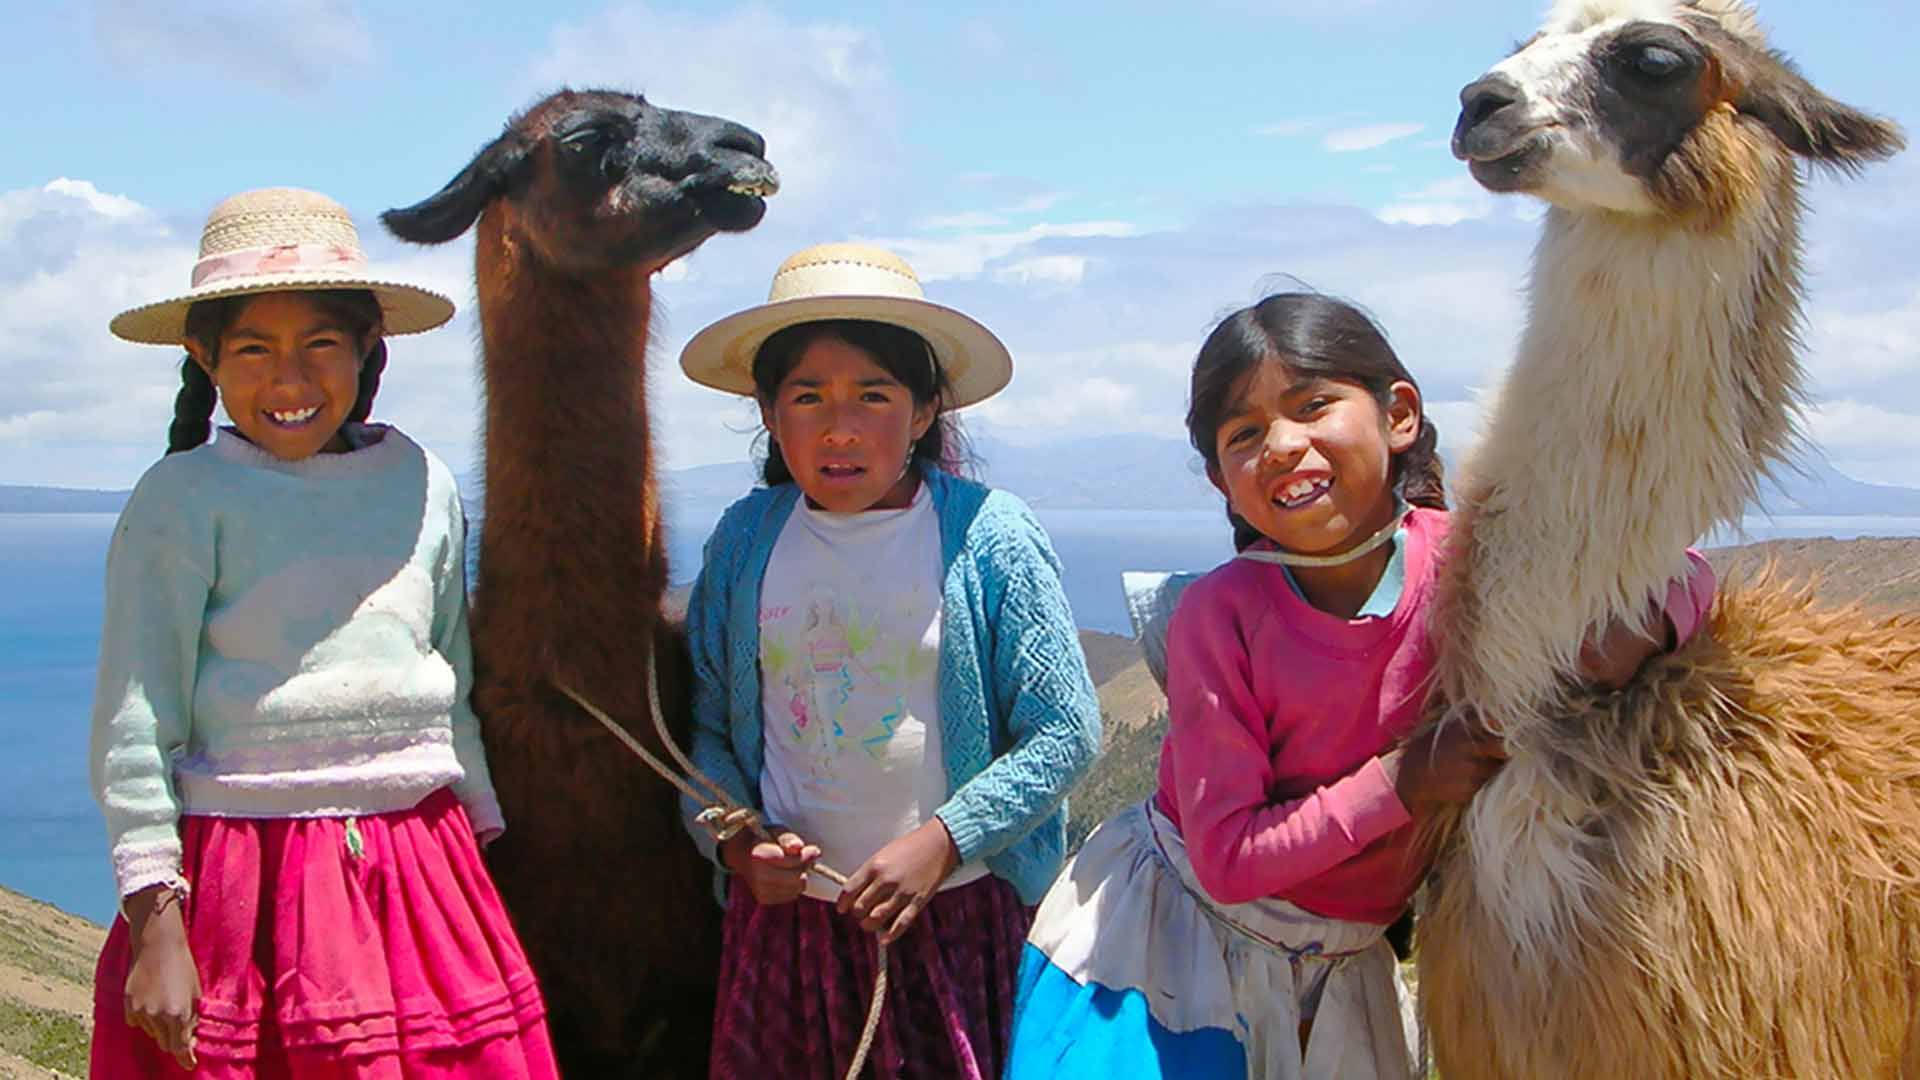 Kuratorium TB - 40 Jahre Engagement in Bolivien – Hilfe zur Selbsthilfe